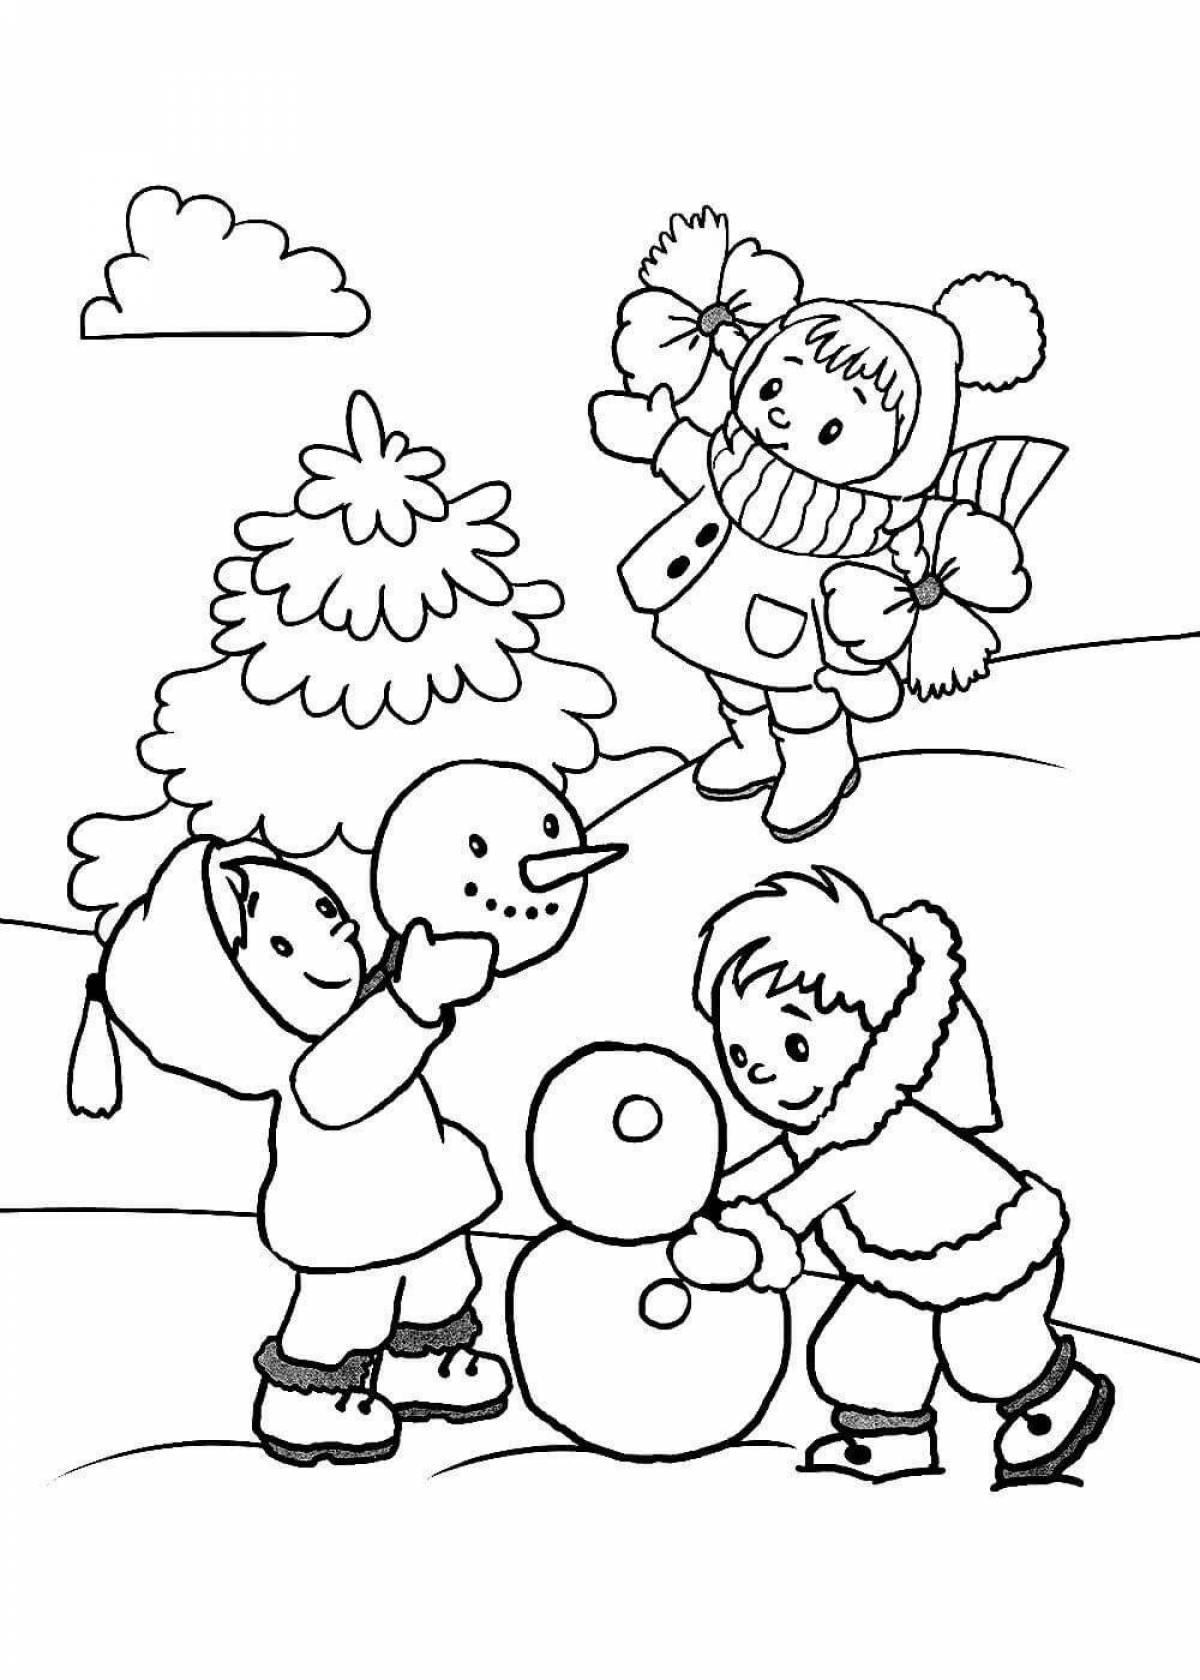 Violent winter coloring for kids